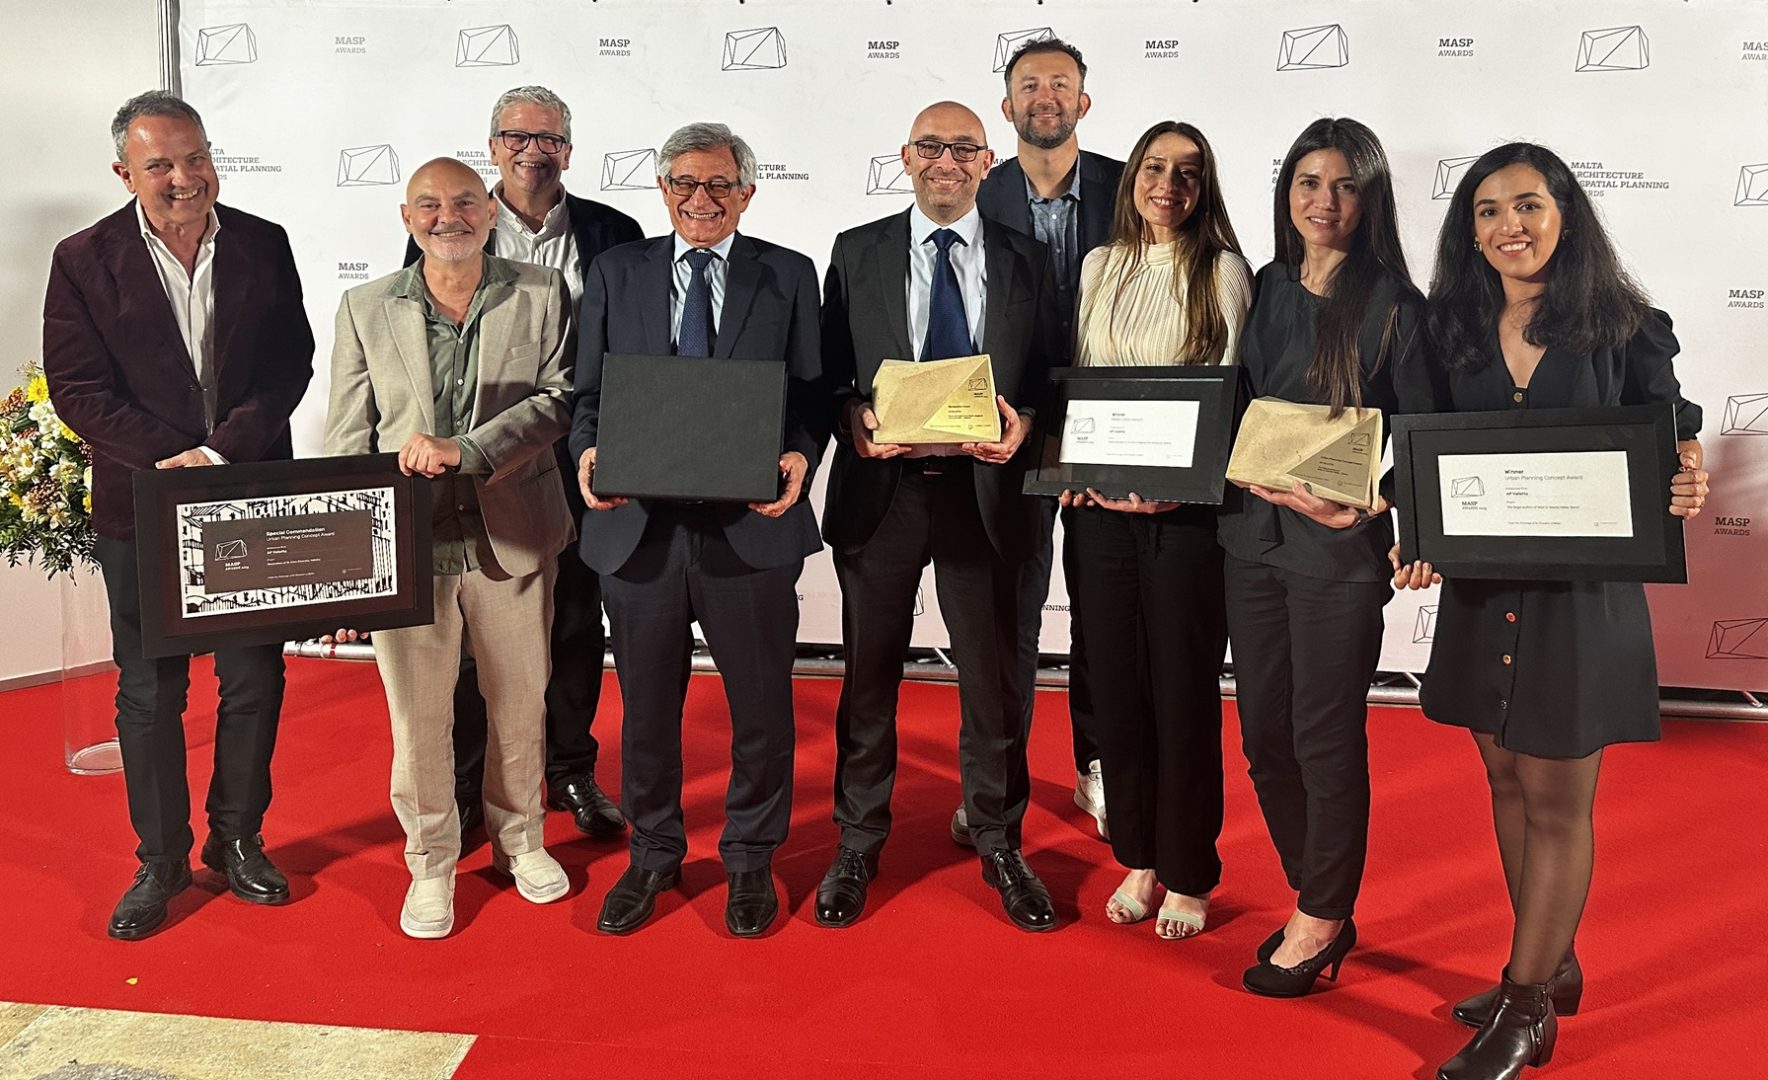 AP Valletta-Winner of MASP Awards